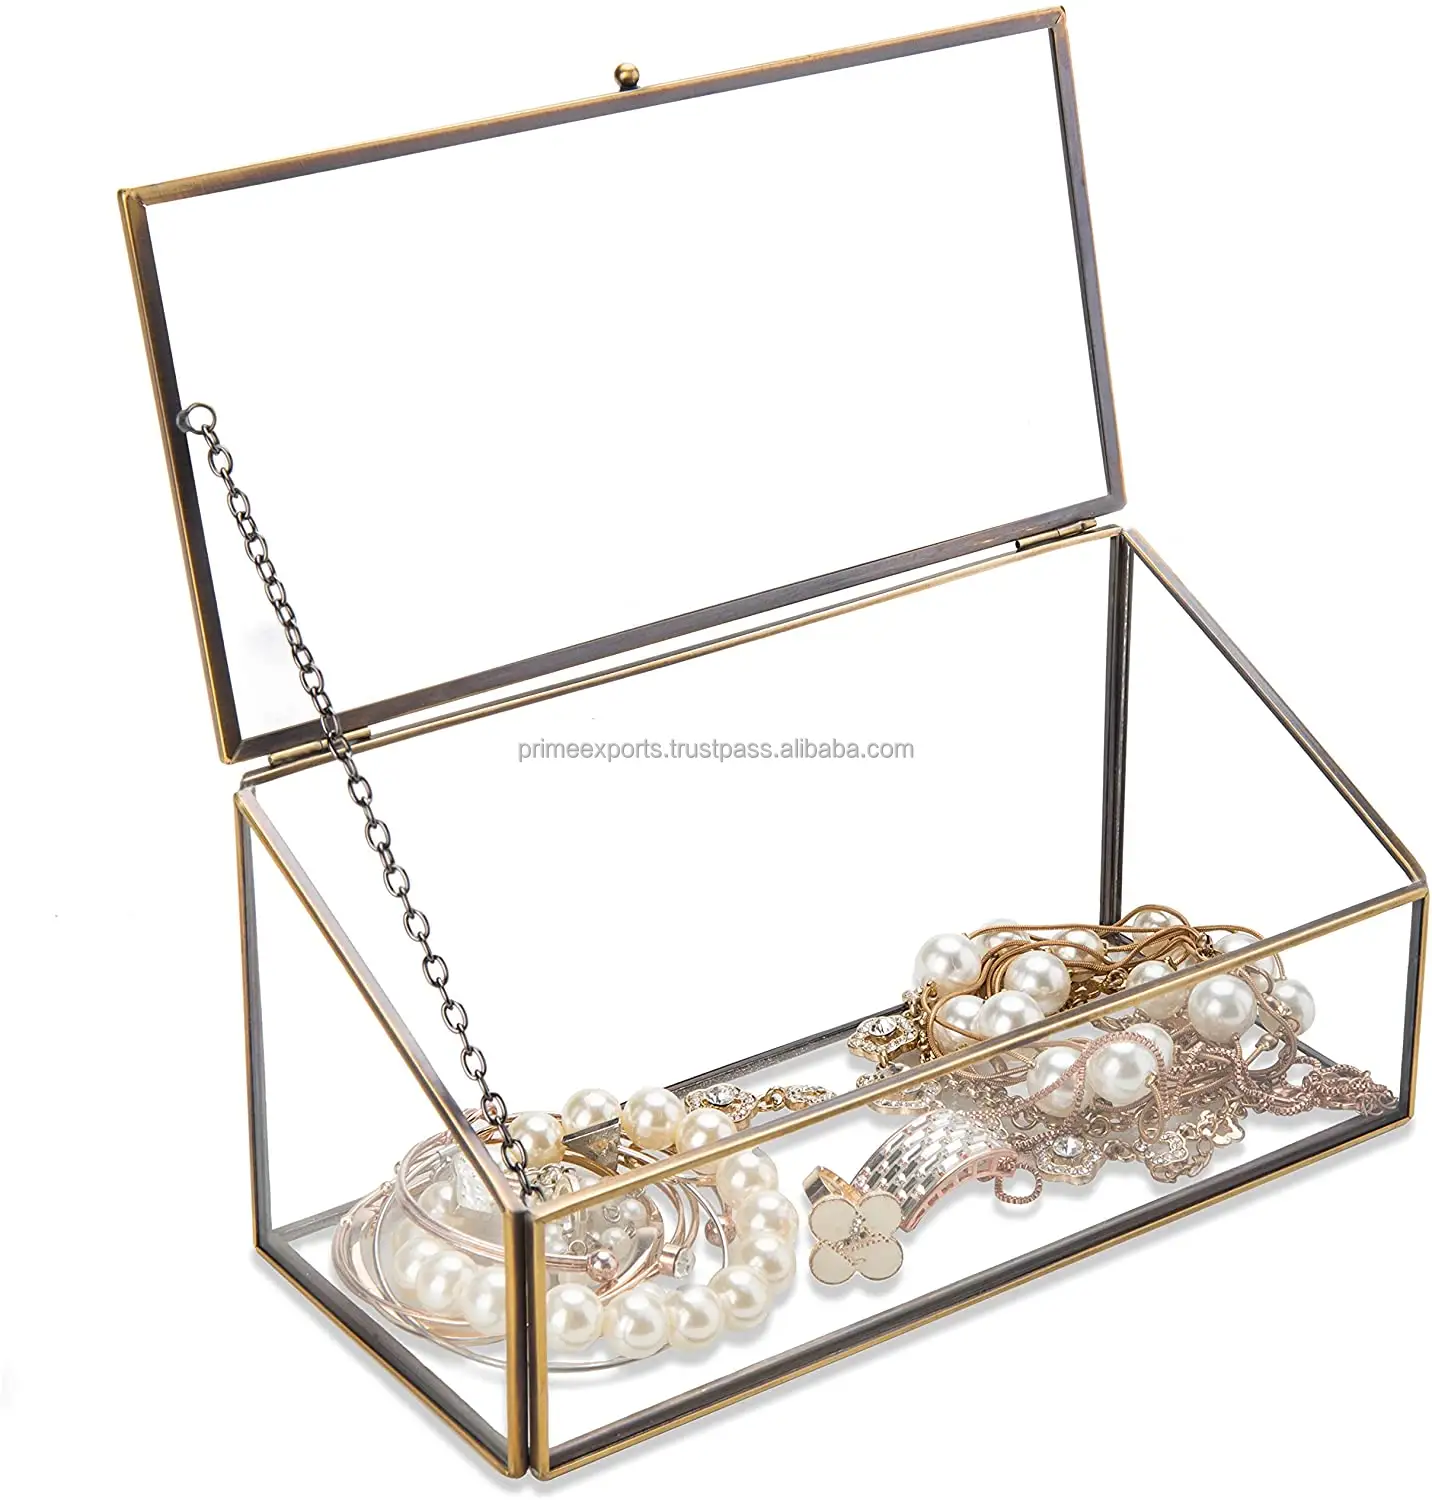 Dikdörtgen tasarım metal ve cam mücevher kutusu lüks kolye ve yüzük tutucu makyaj hediye kutusu sıcak satış cam kutu